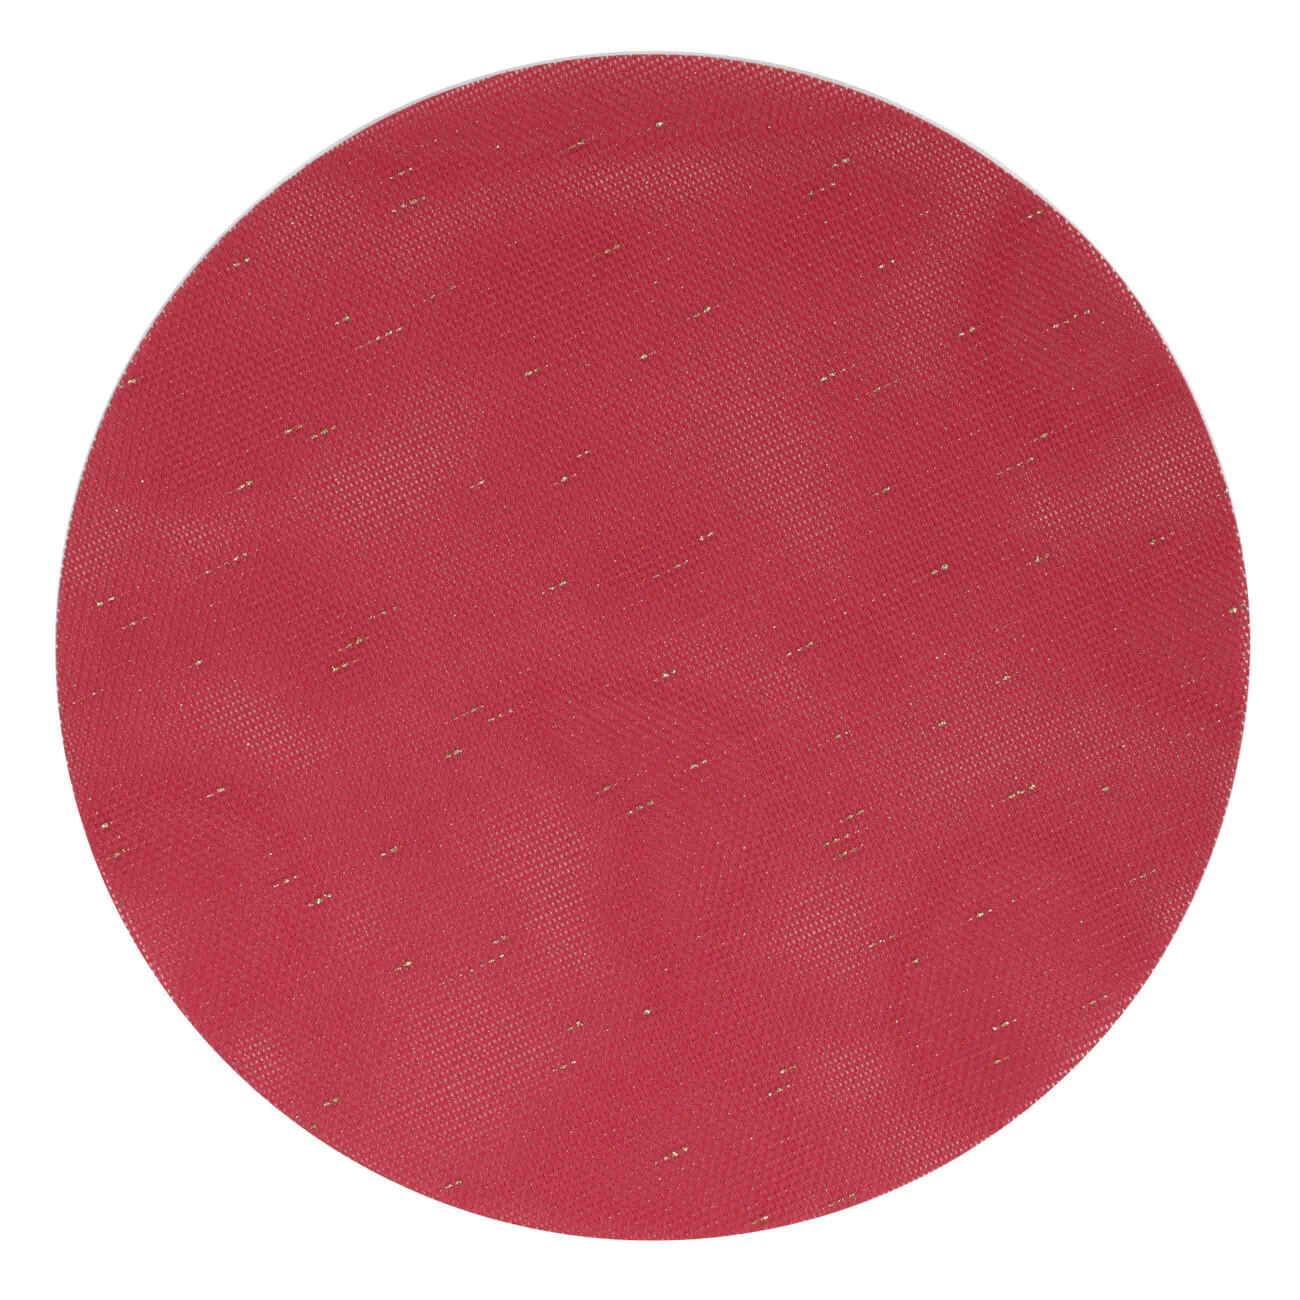 Салфетка под приборы, 38 см, ПВХ/полиэстер, круглая, красная, Solid смородина красная уральская красавица